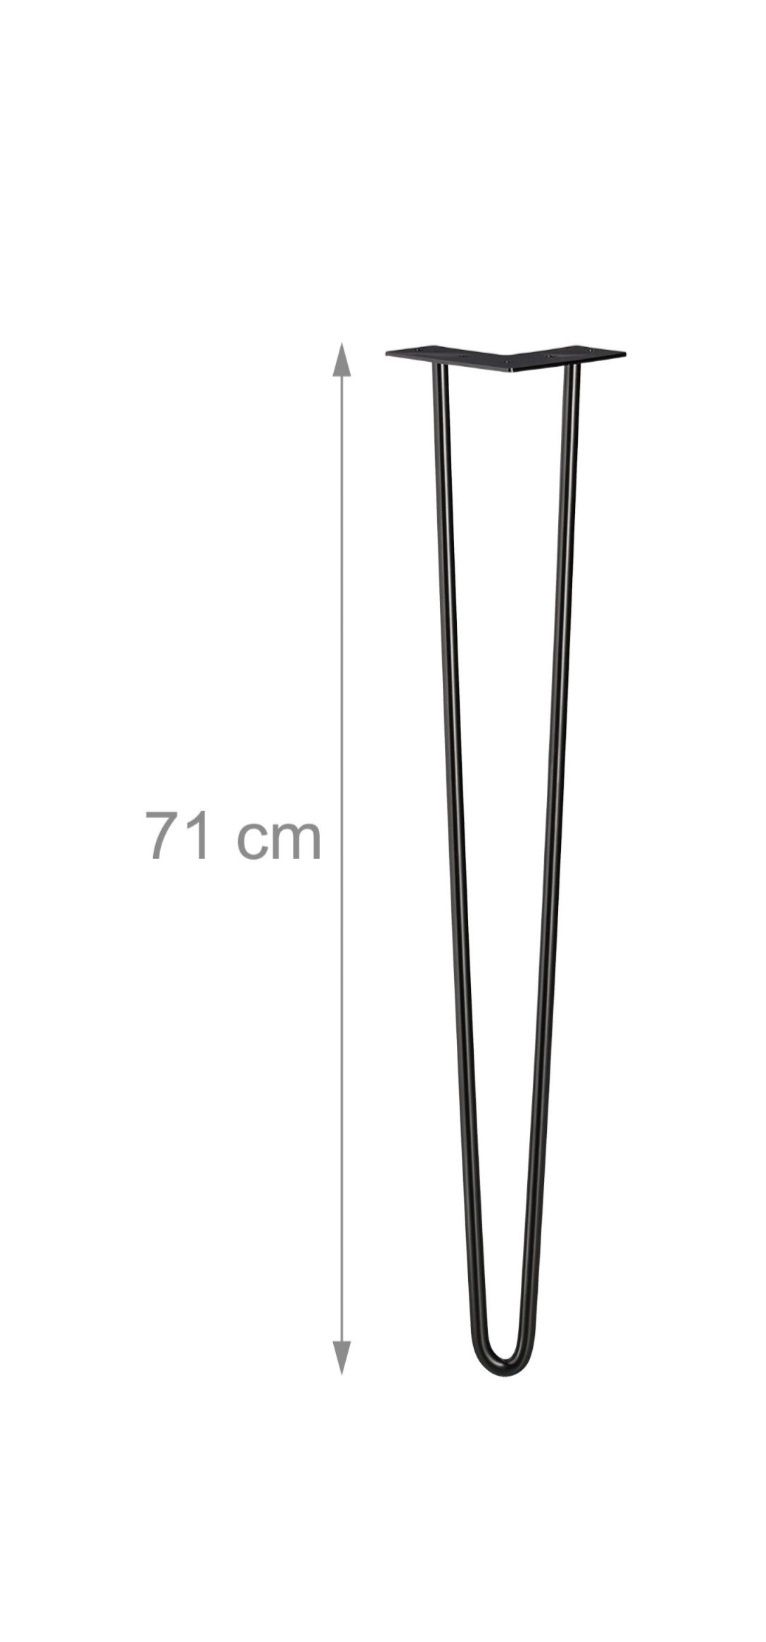 Nogi nóżki do stołu szafki hairpin 4szt 71cm